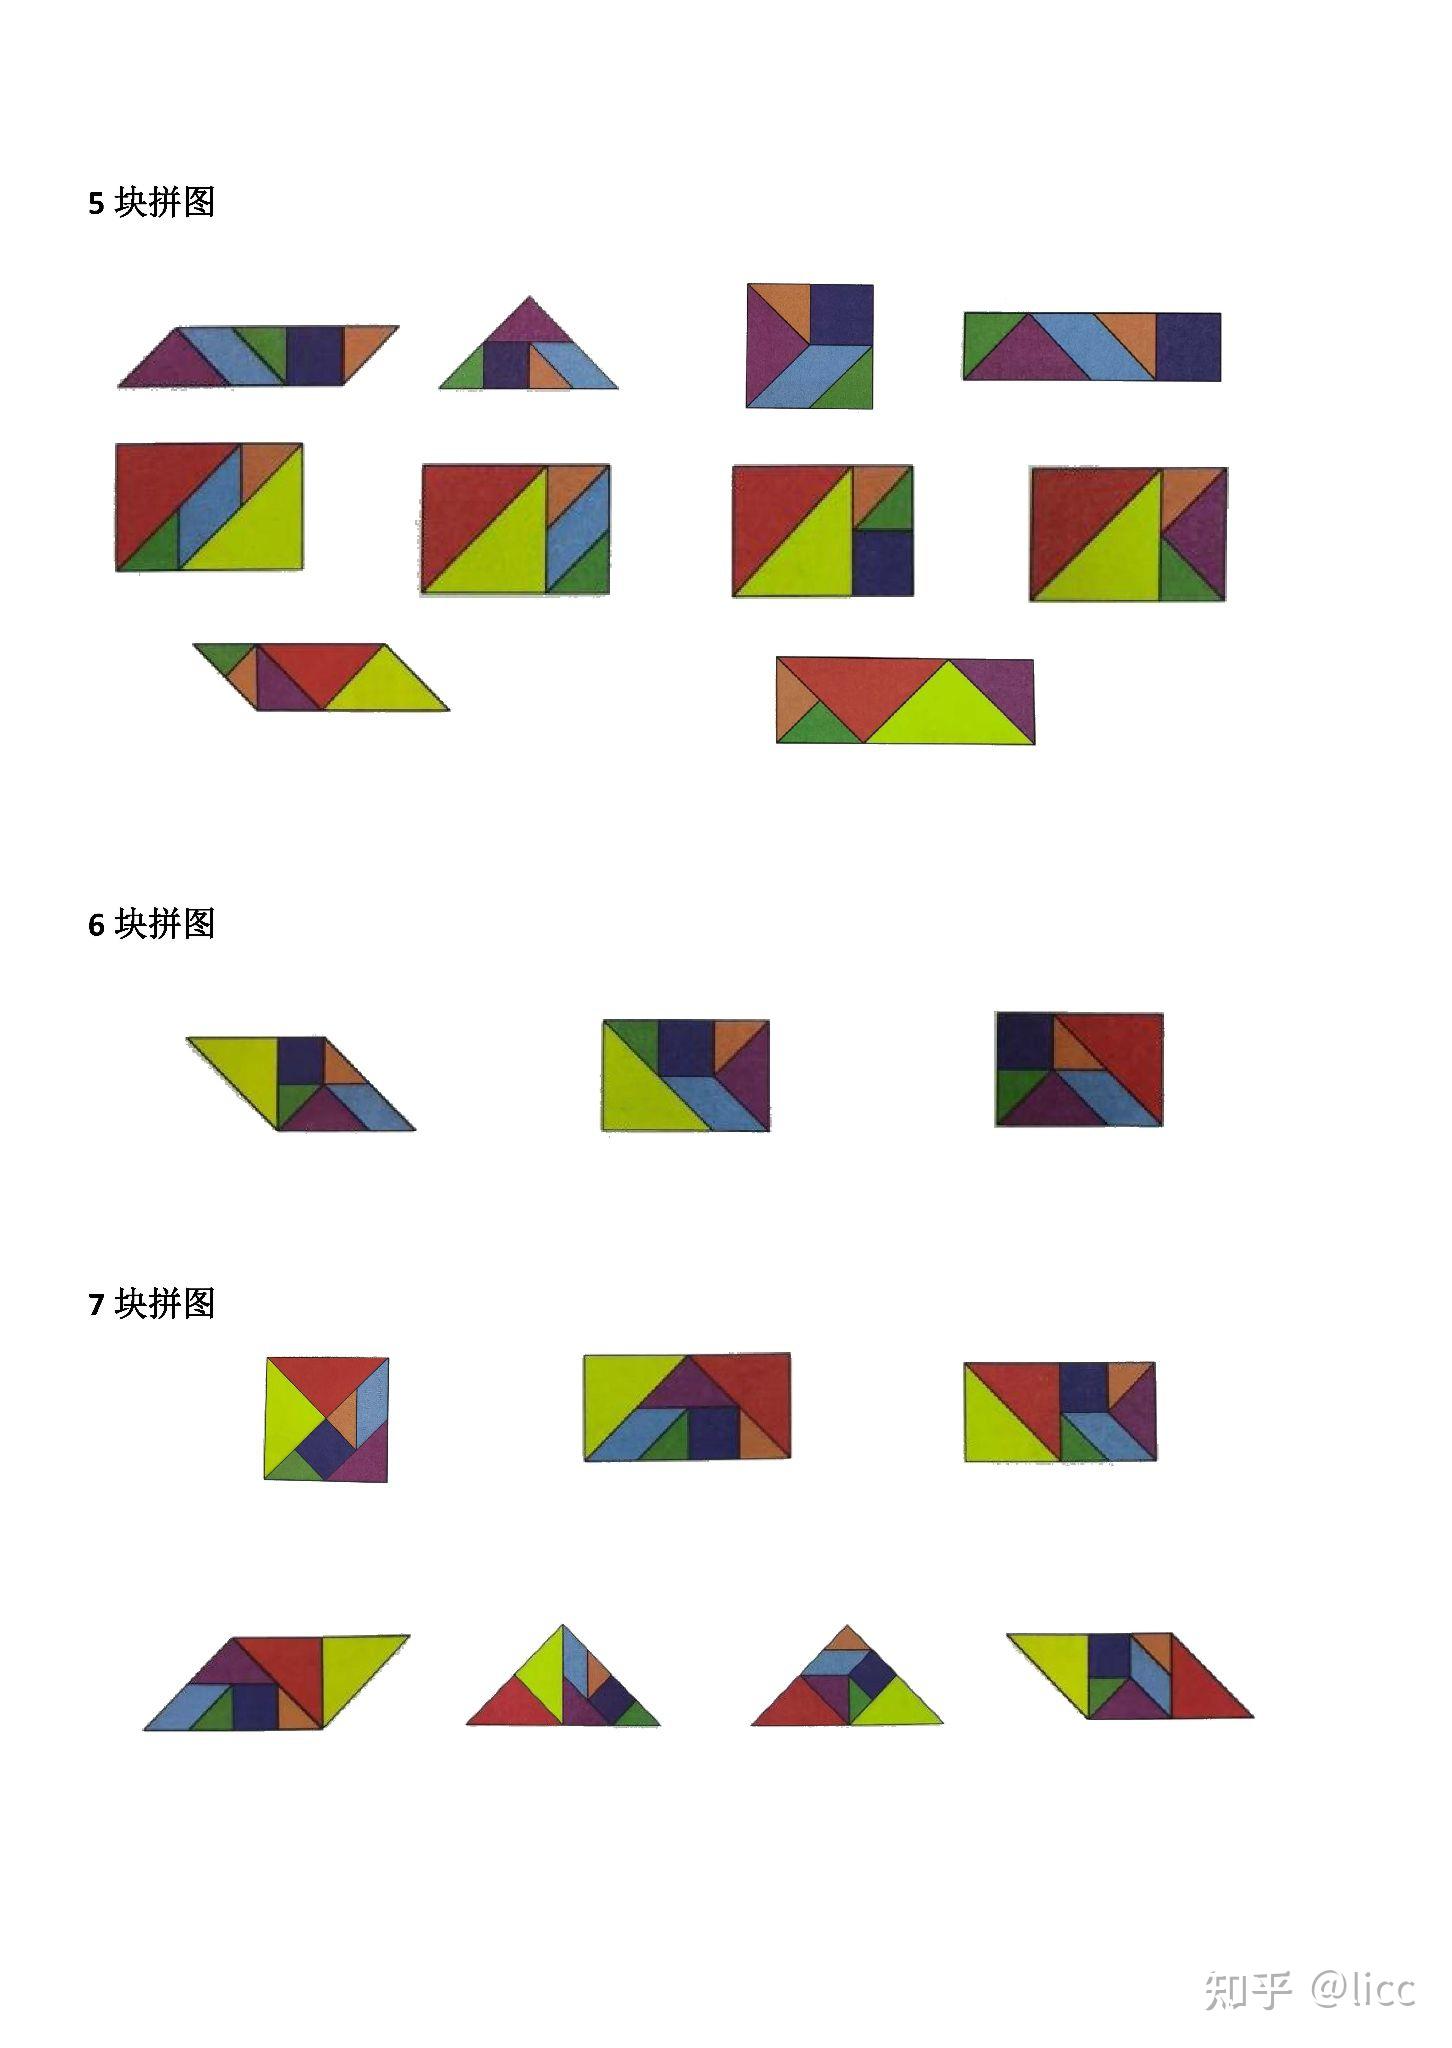 四块七巧板拼成长方形图片